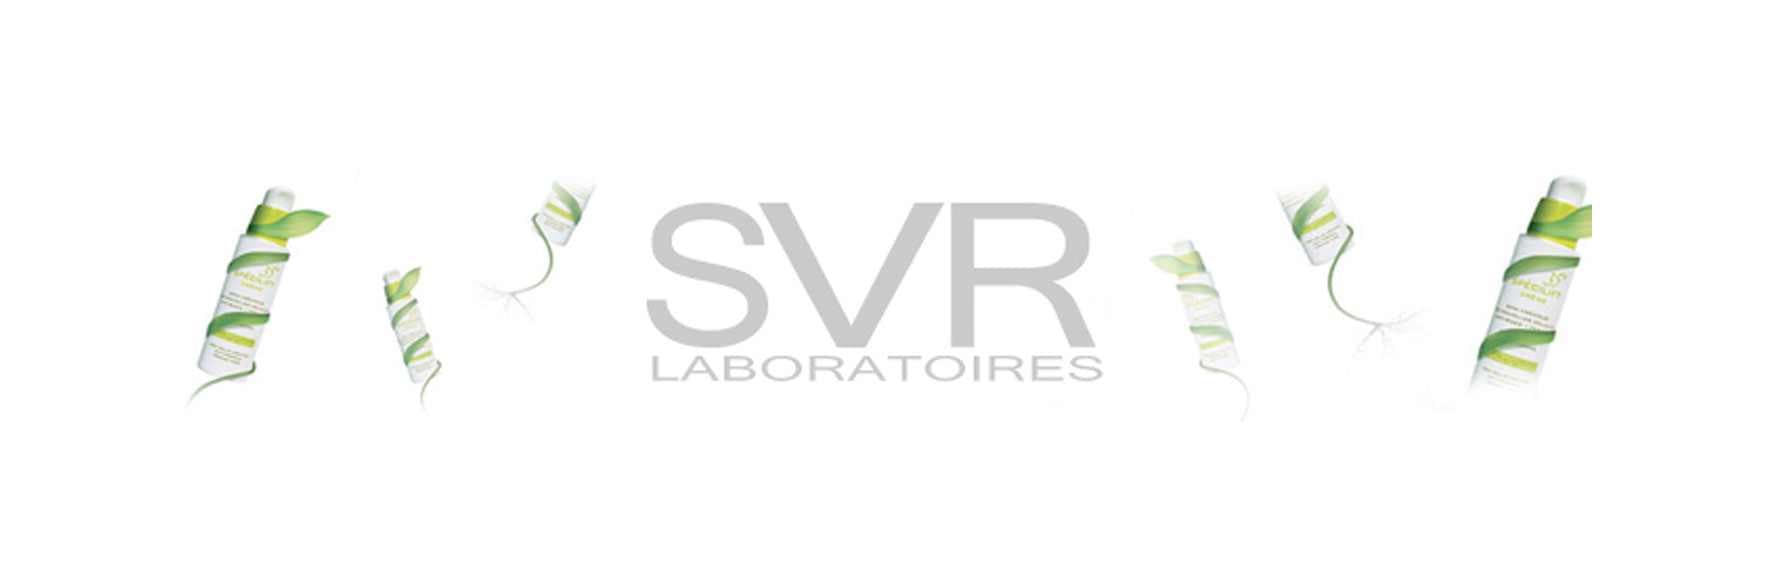 اس وی آر | محصولات اس وی آر SVR اورجینال